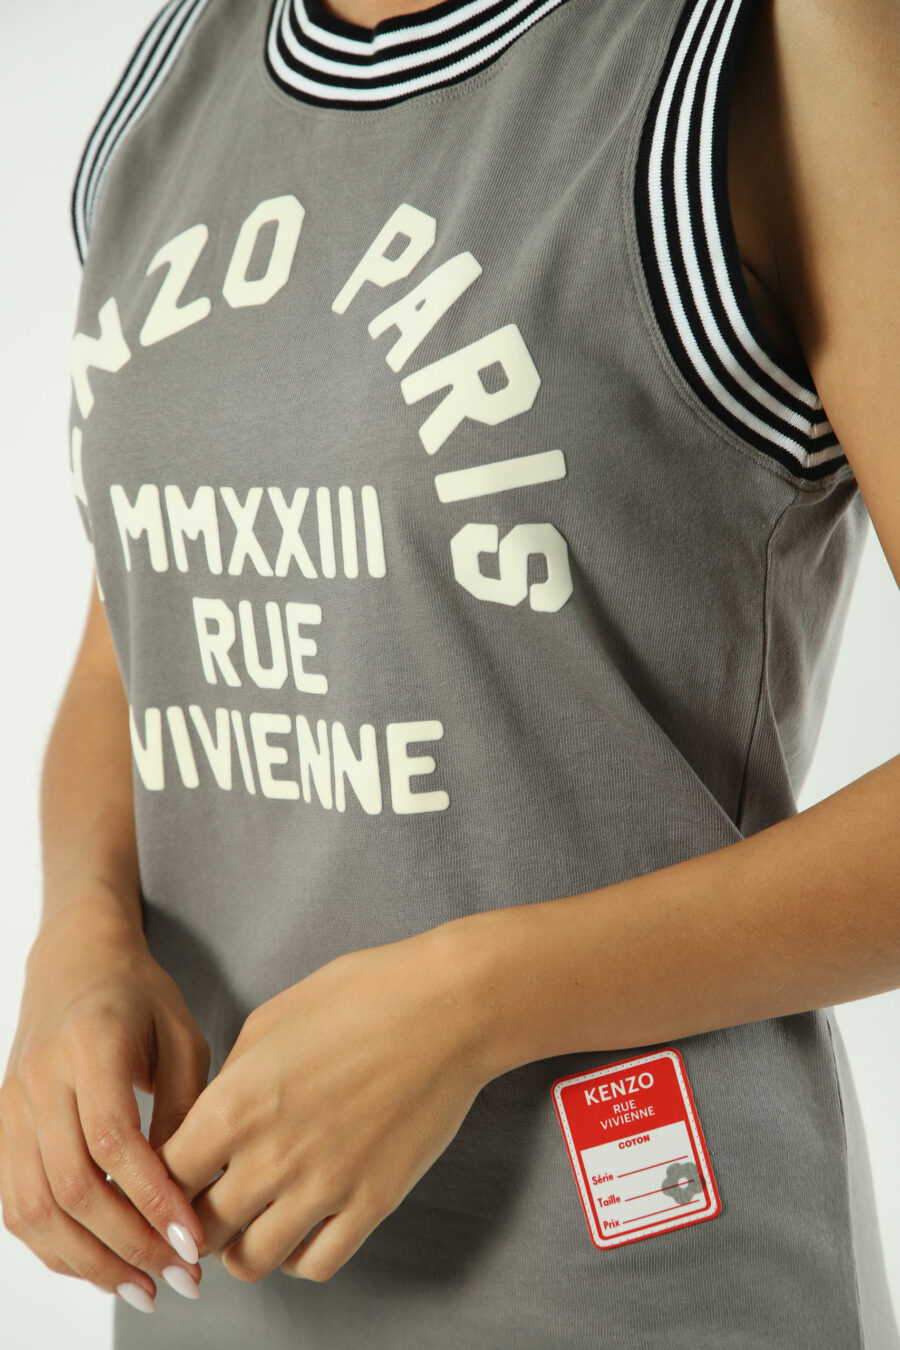 Ärmelloses graues Kleid mit Maxilogue "rue vivienne" - Fotos 1503